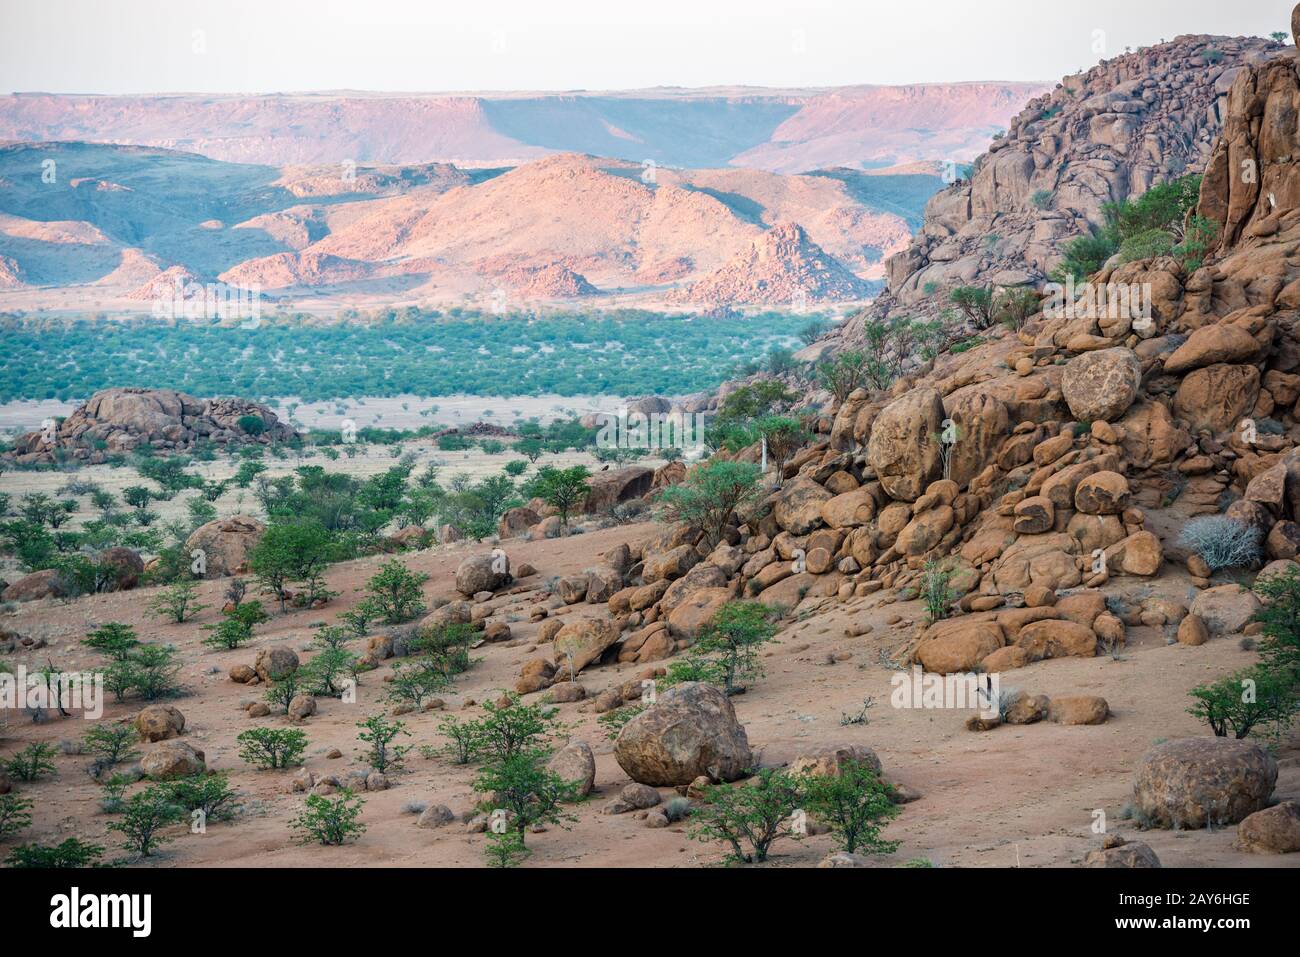 Felsige Landschaft von Namibia mit riesigen Felsbrocken und grünen Bäumen Stockfoto